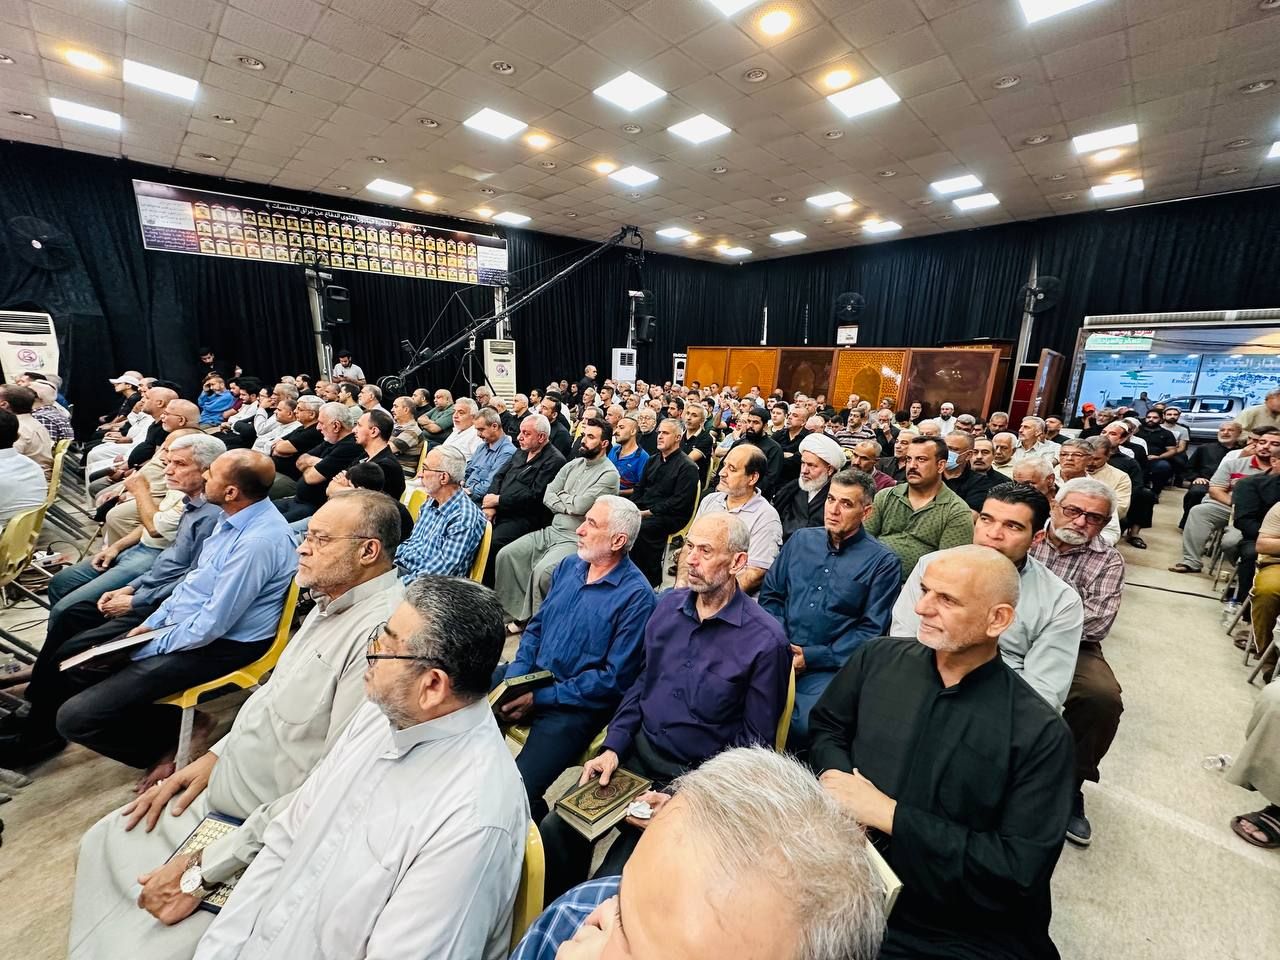 المجمع العلمي وممثلية المرجعية الدينية في بغداد يقيمان محفل قرآني في الكاظمية المقدسة